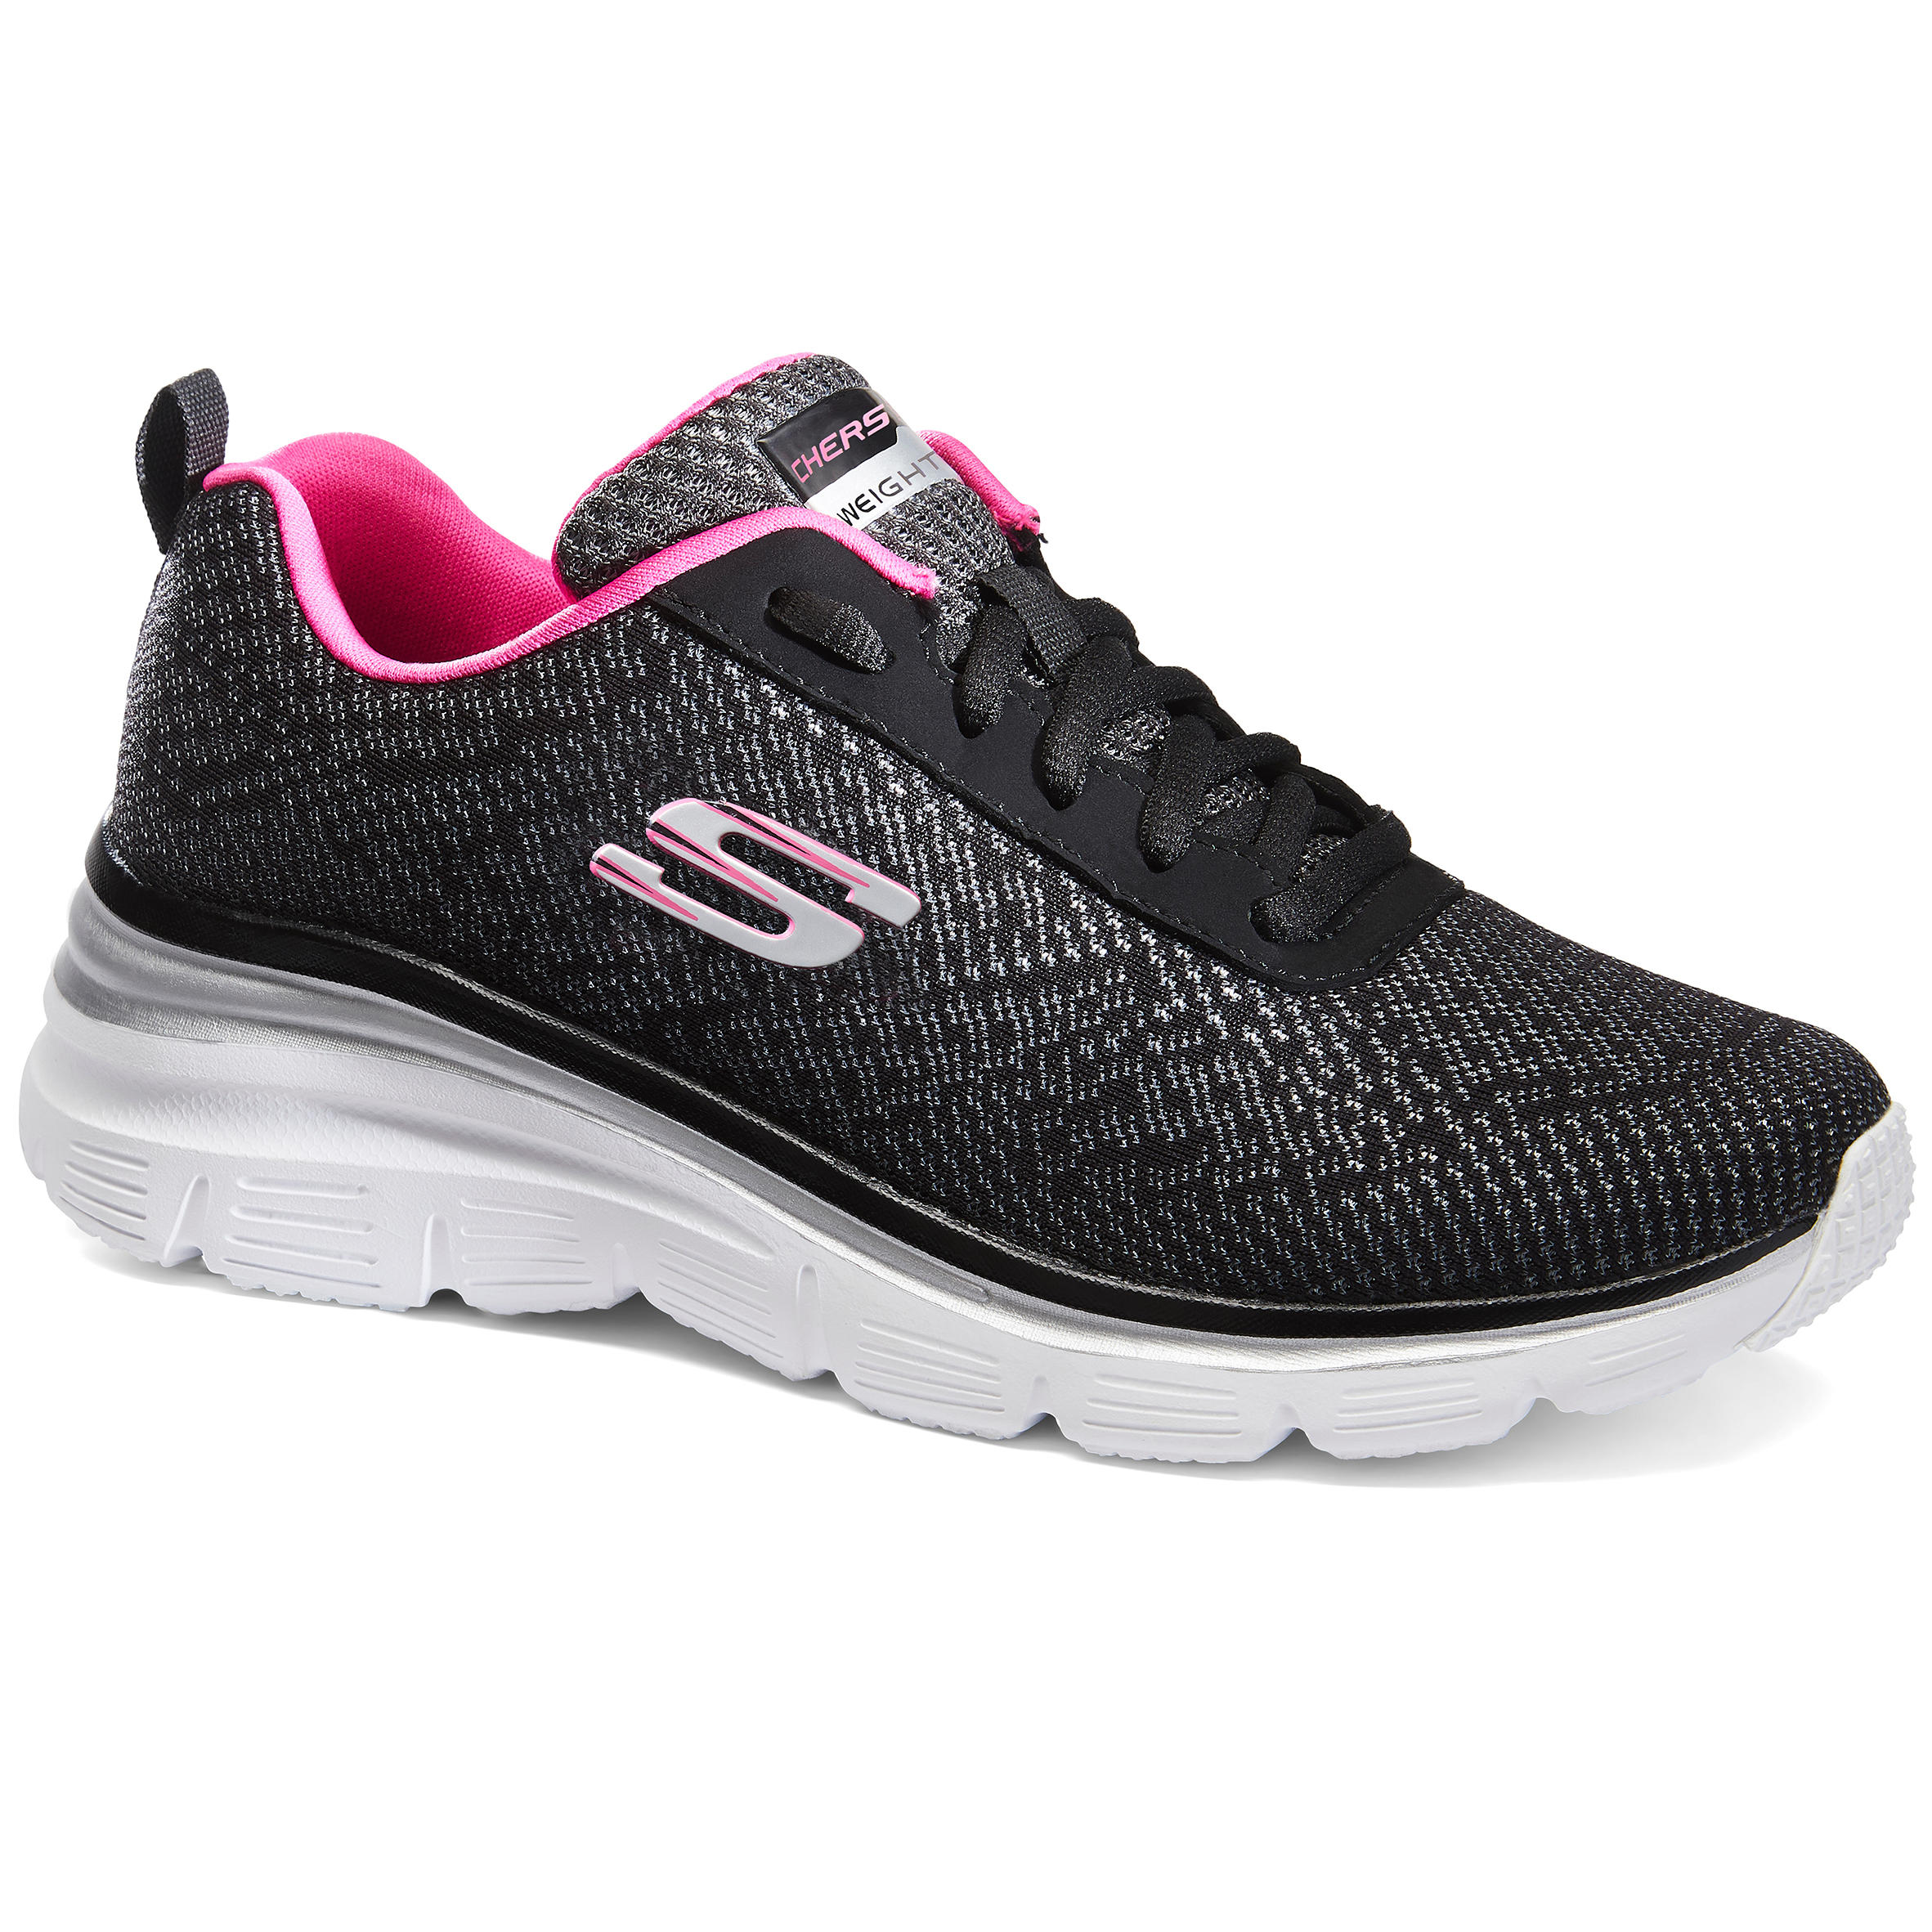 SKECHERS Flex Appeal Women's Fitness Walking Shoes - Black/Pink